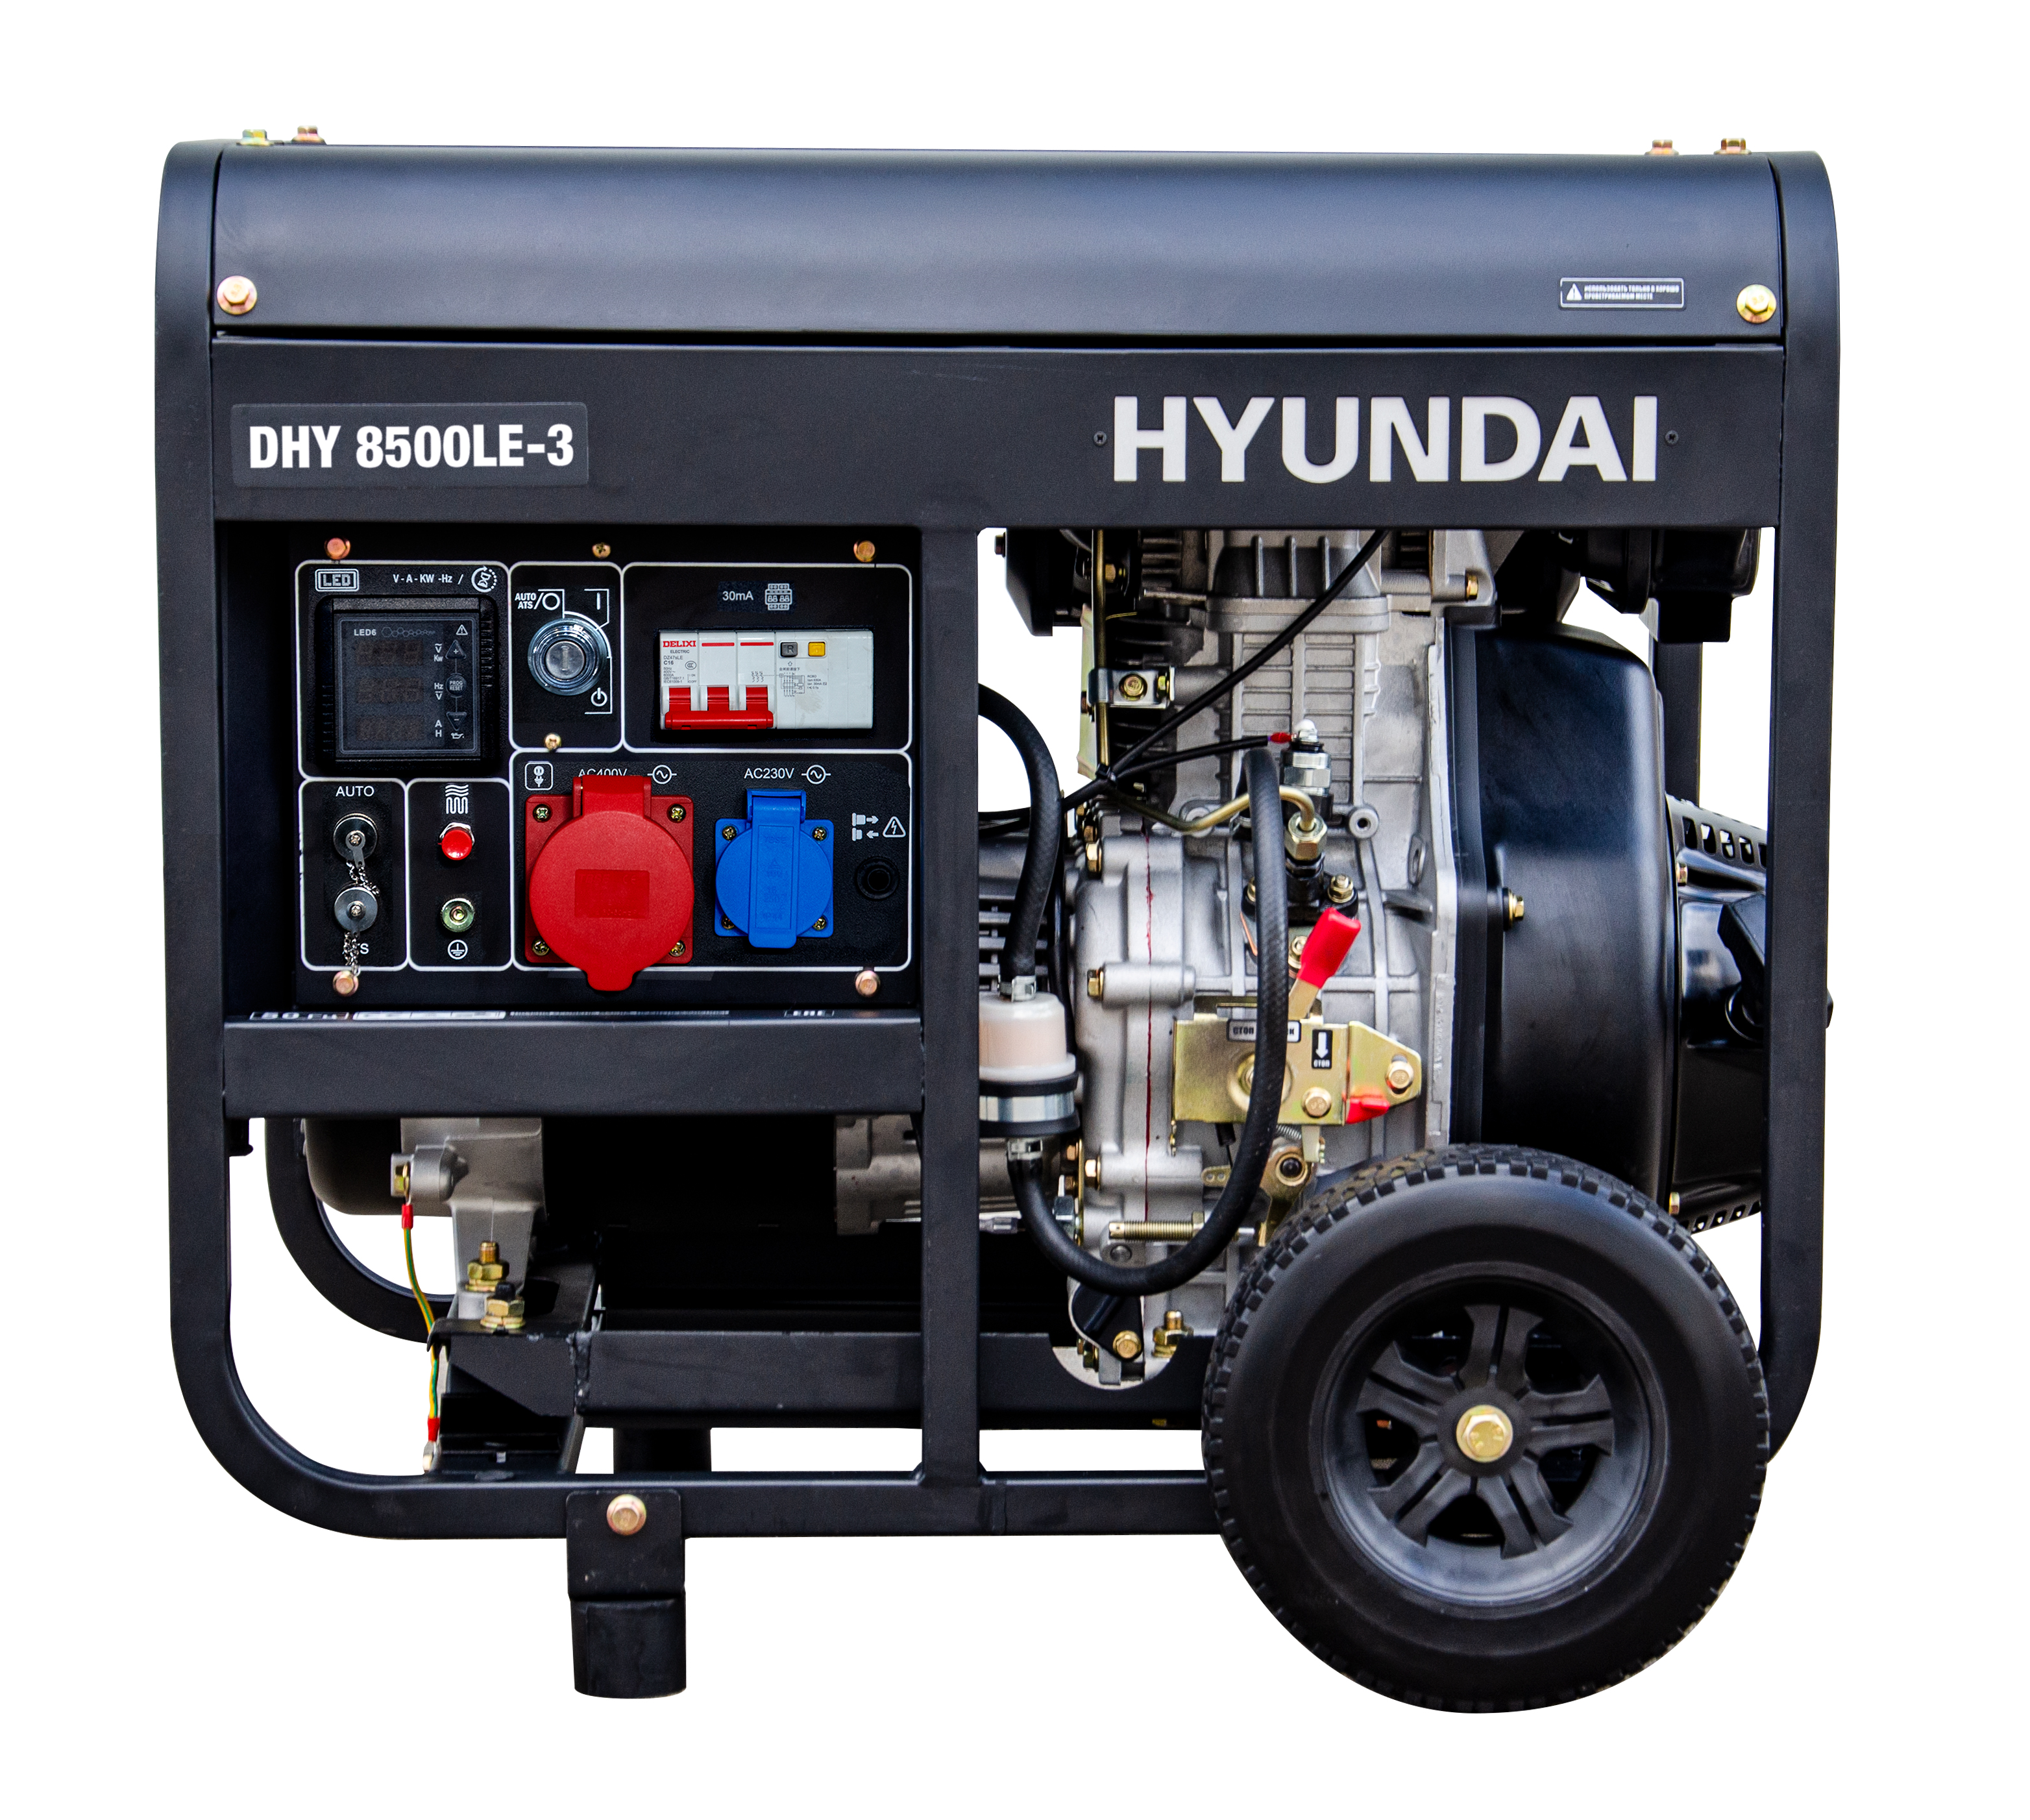 Дизельный генератор Hyundai DHY 8500LE-3 дизельный генератор vektor dg 5000